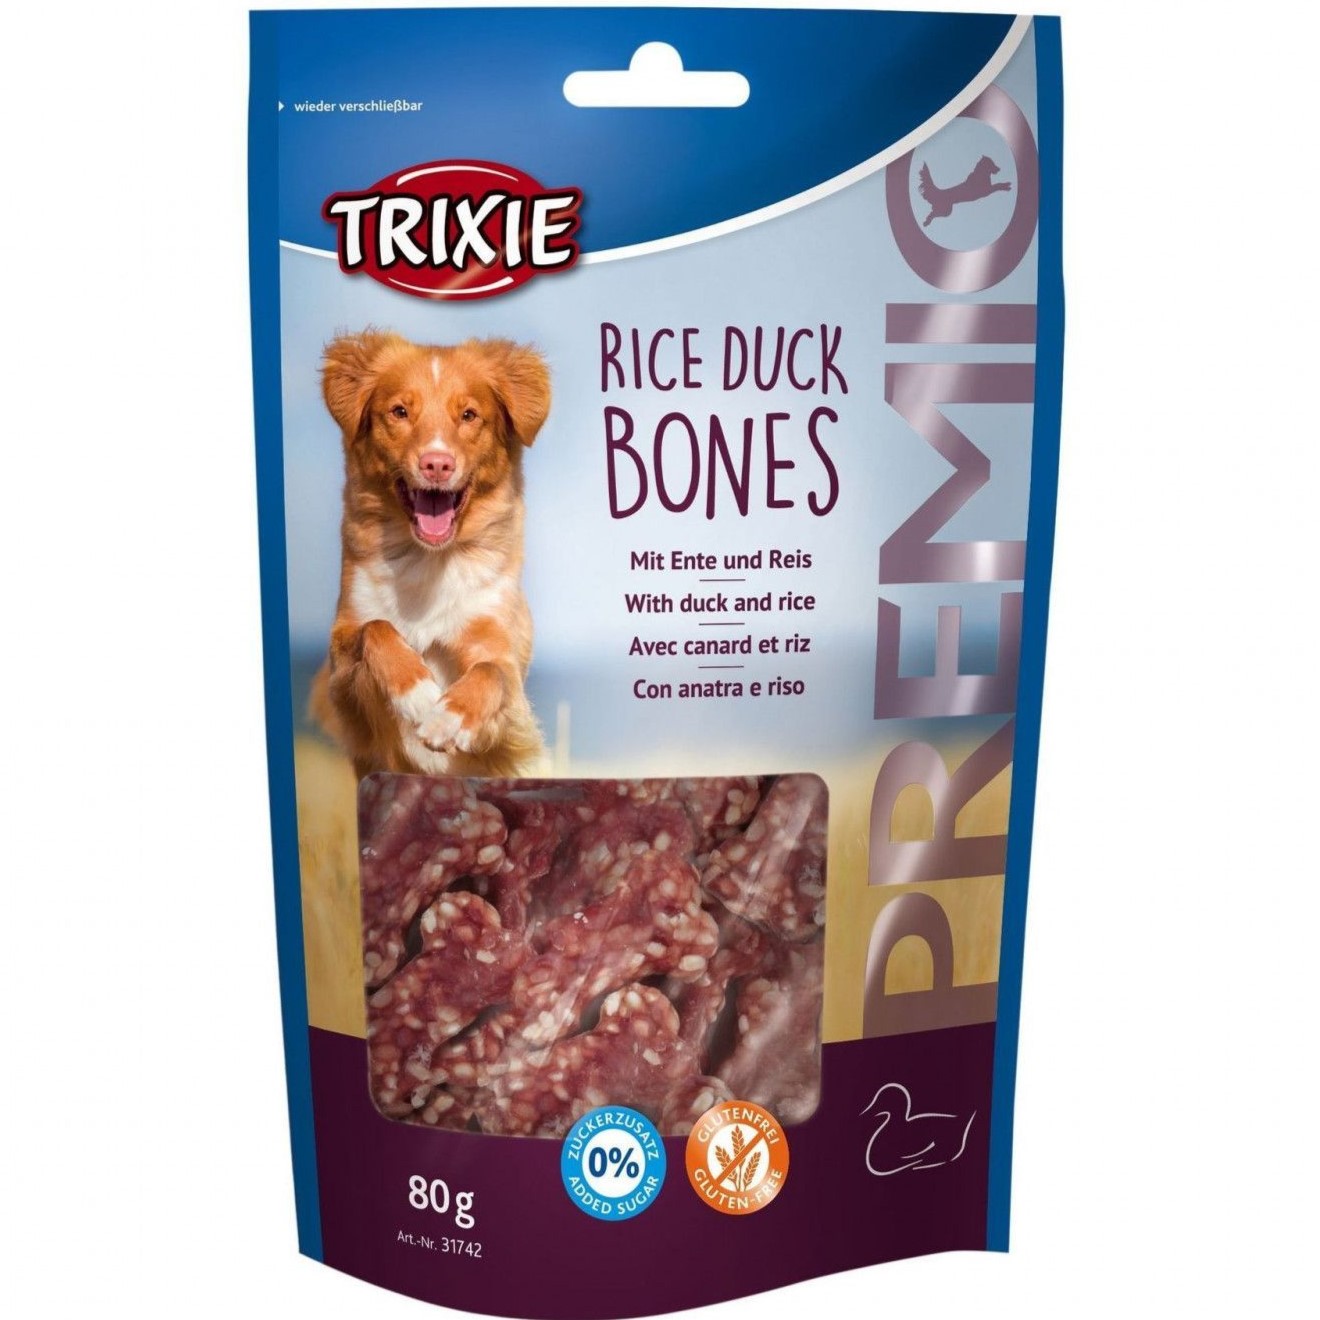 Ласощі для собак Trixie Premio Rice Duck Bones, з качкою та рисом, 80 г - фото 1